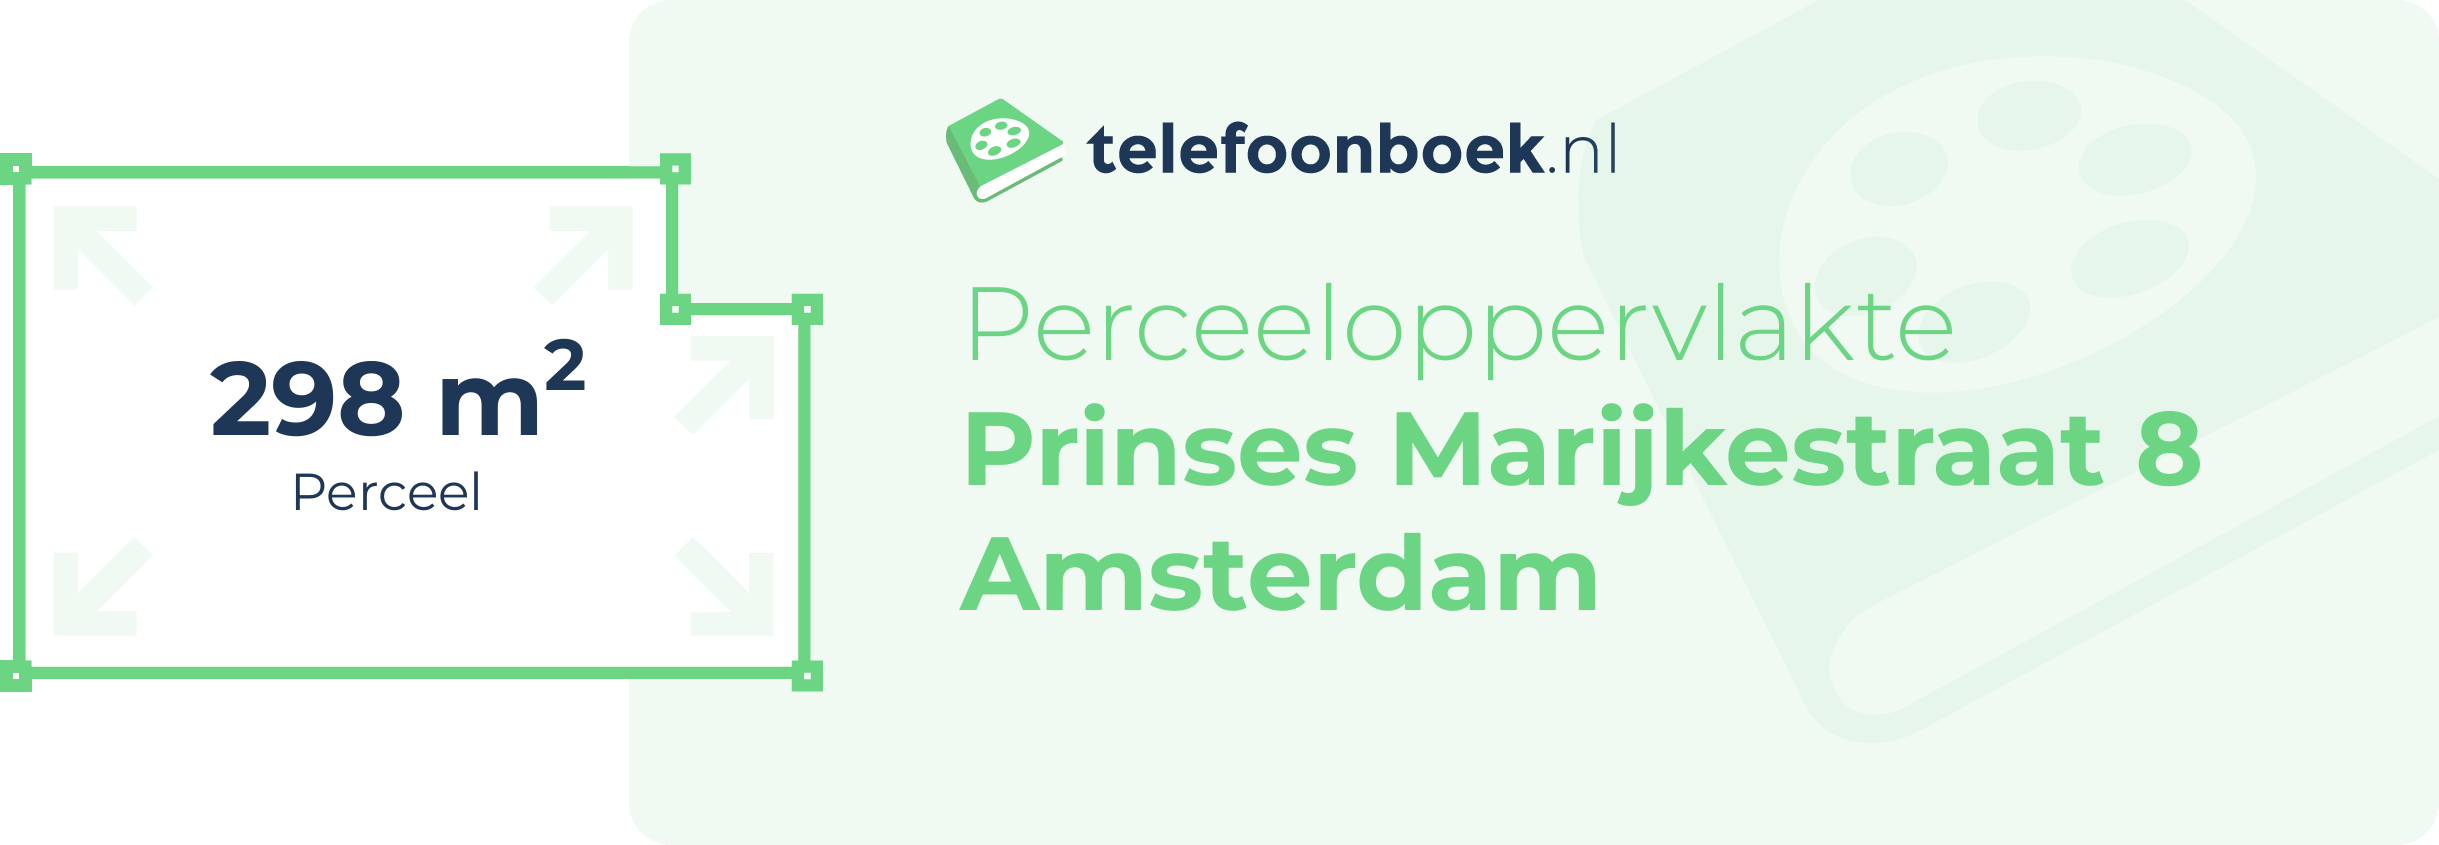 Perceeloppervlakte Prinses Marijkestraat 8 Amsterdam